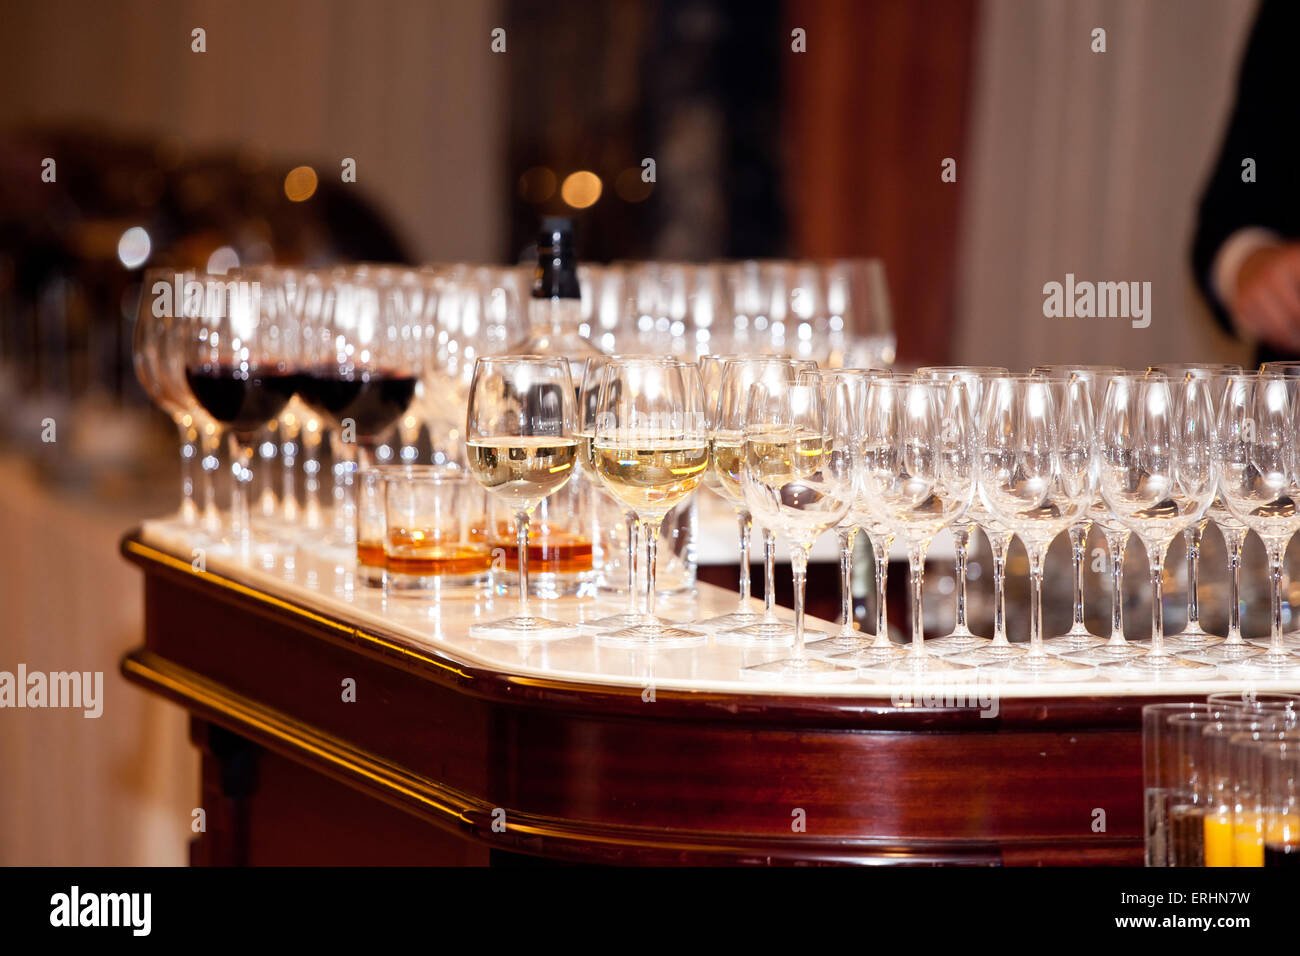 Verres de cristal sont prêts pour la dégustation de vins Banque D'Images